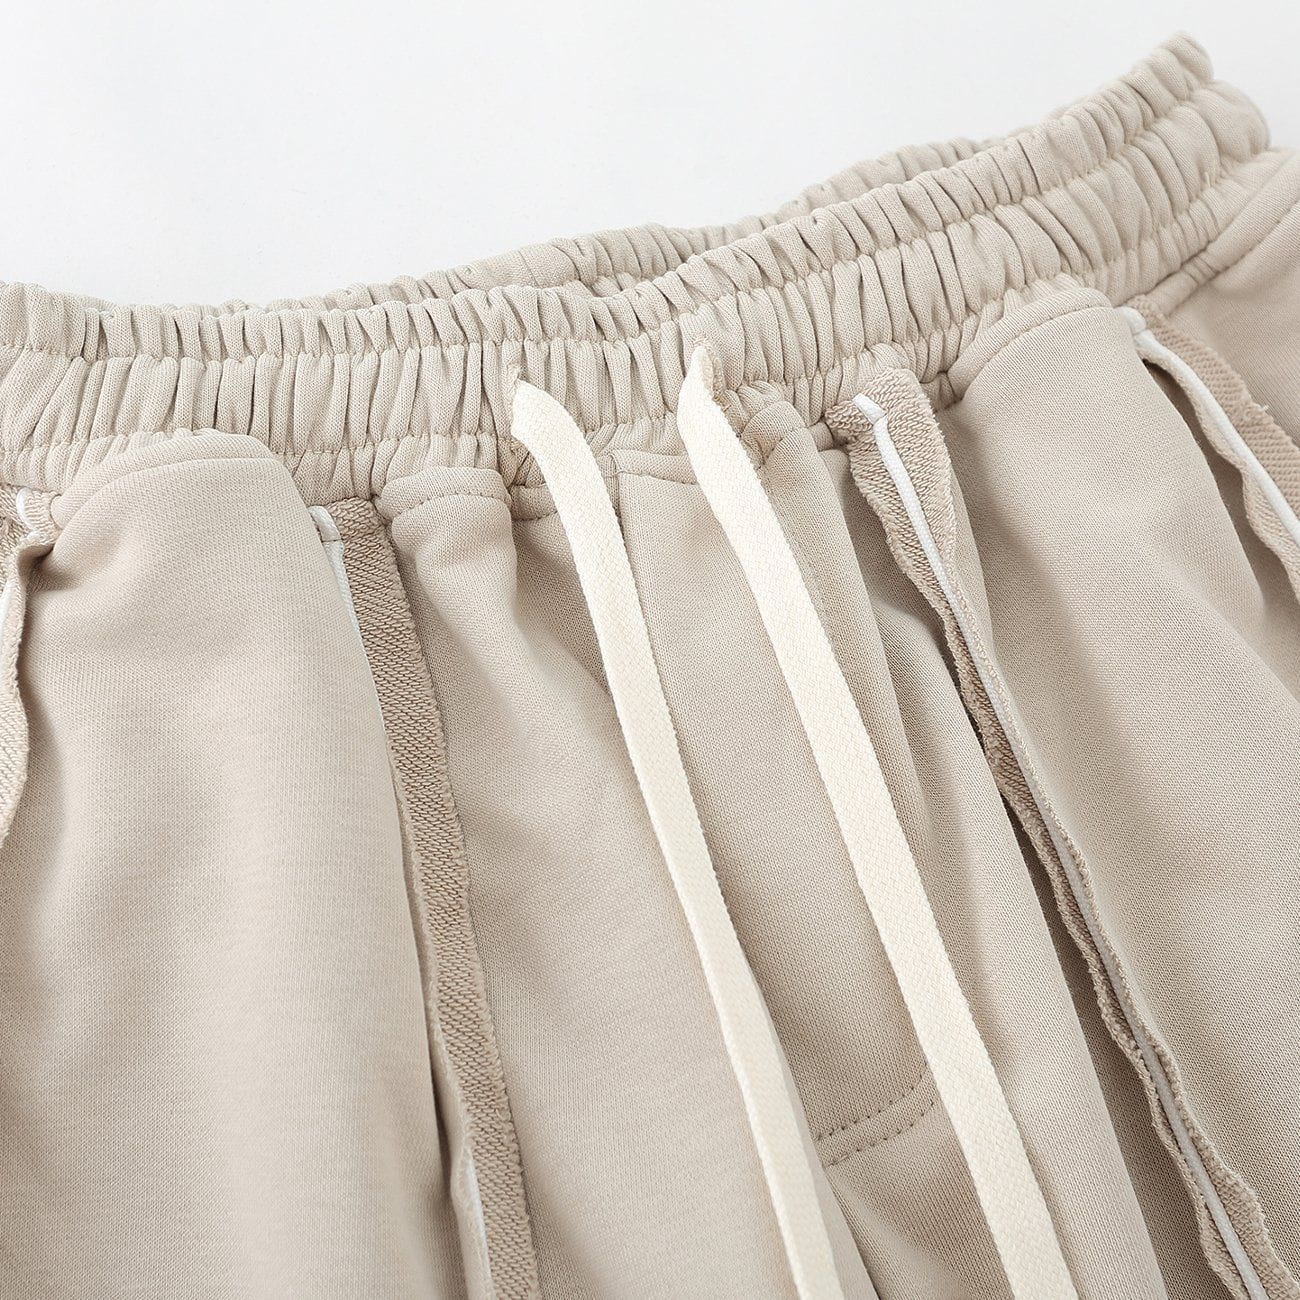 JUSTNOTAG Solid Color Drawstring Waist Shorts